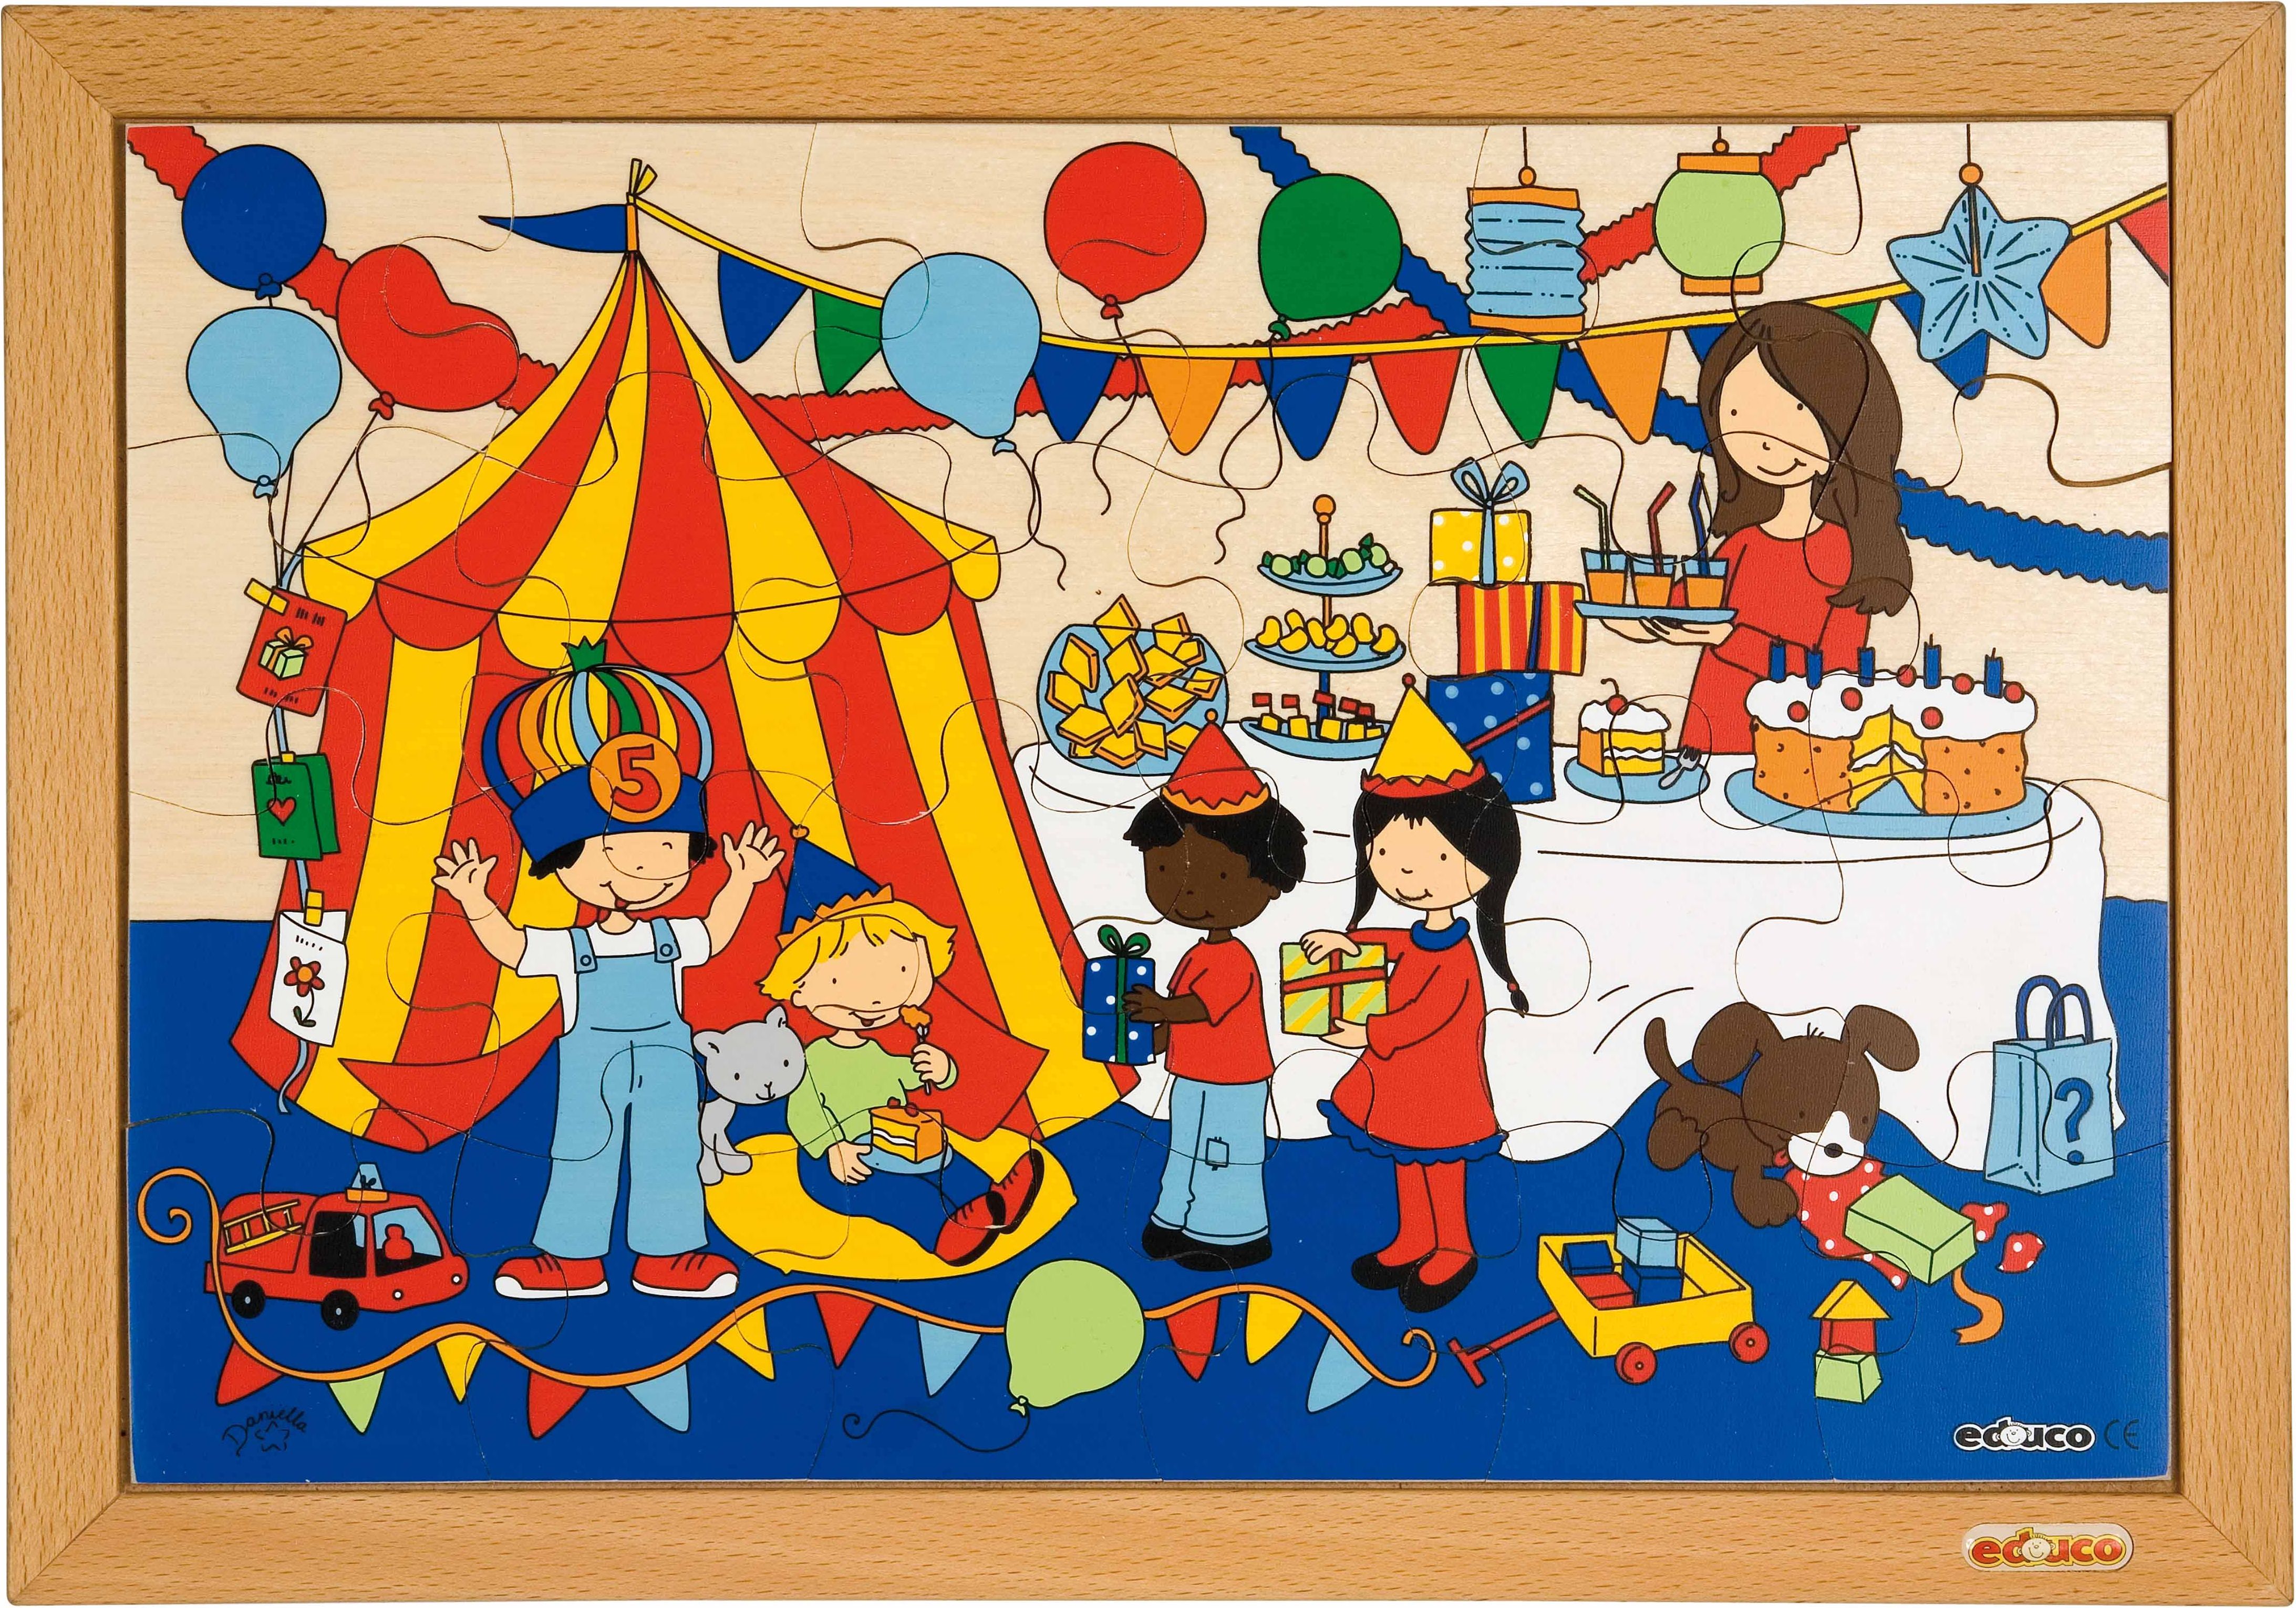 Educo E522570 Children's activities puzzle - party - obrázek 1